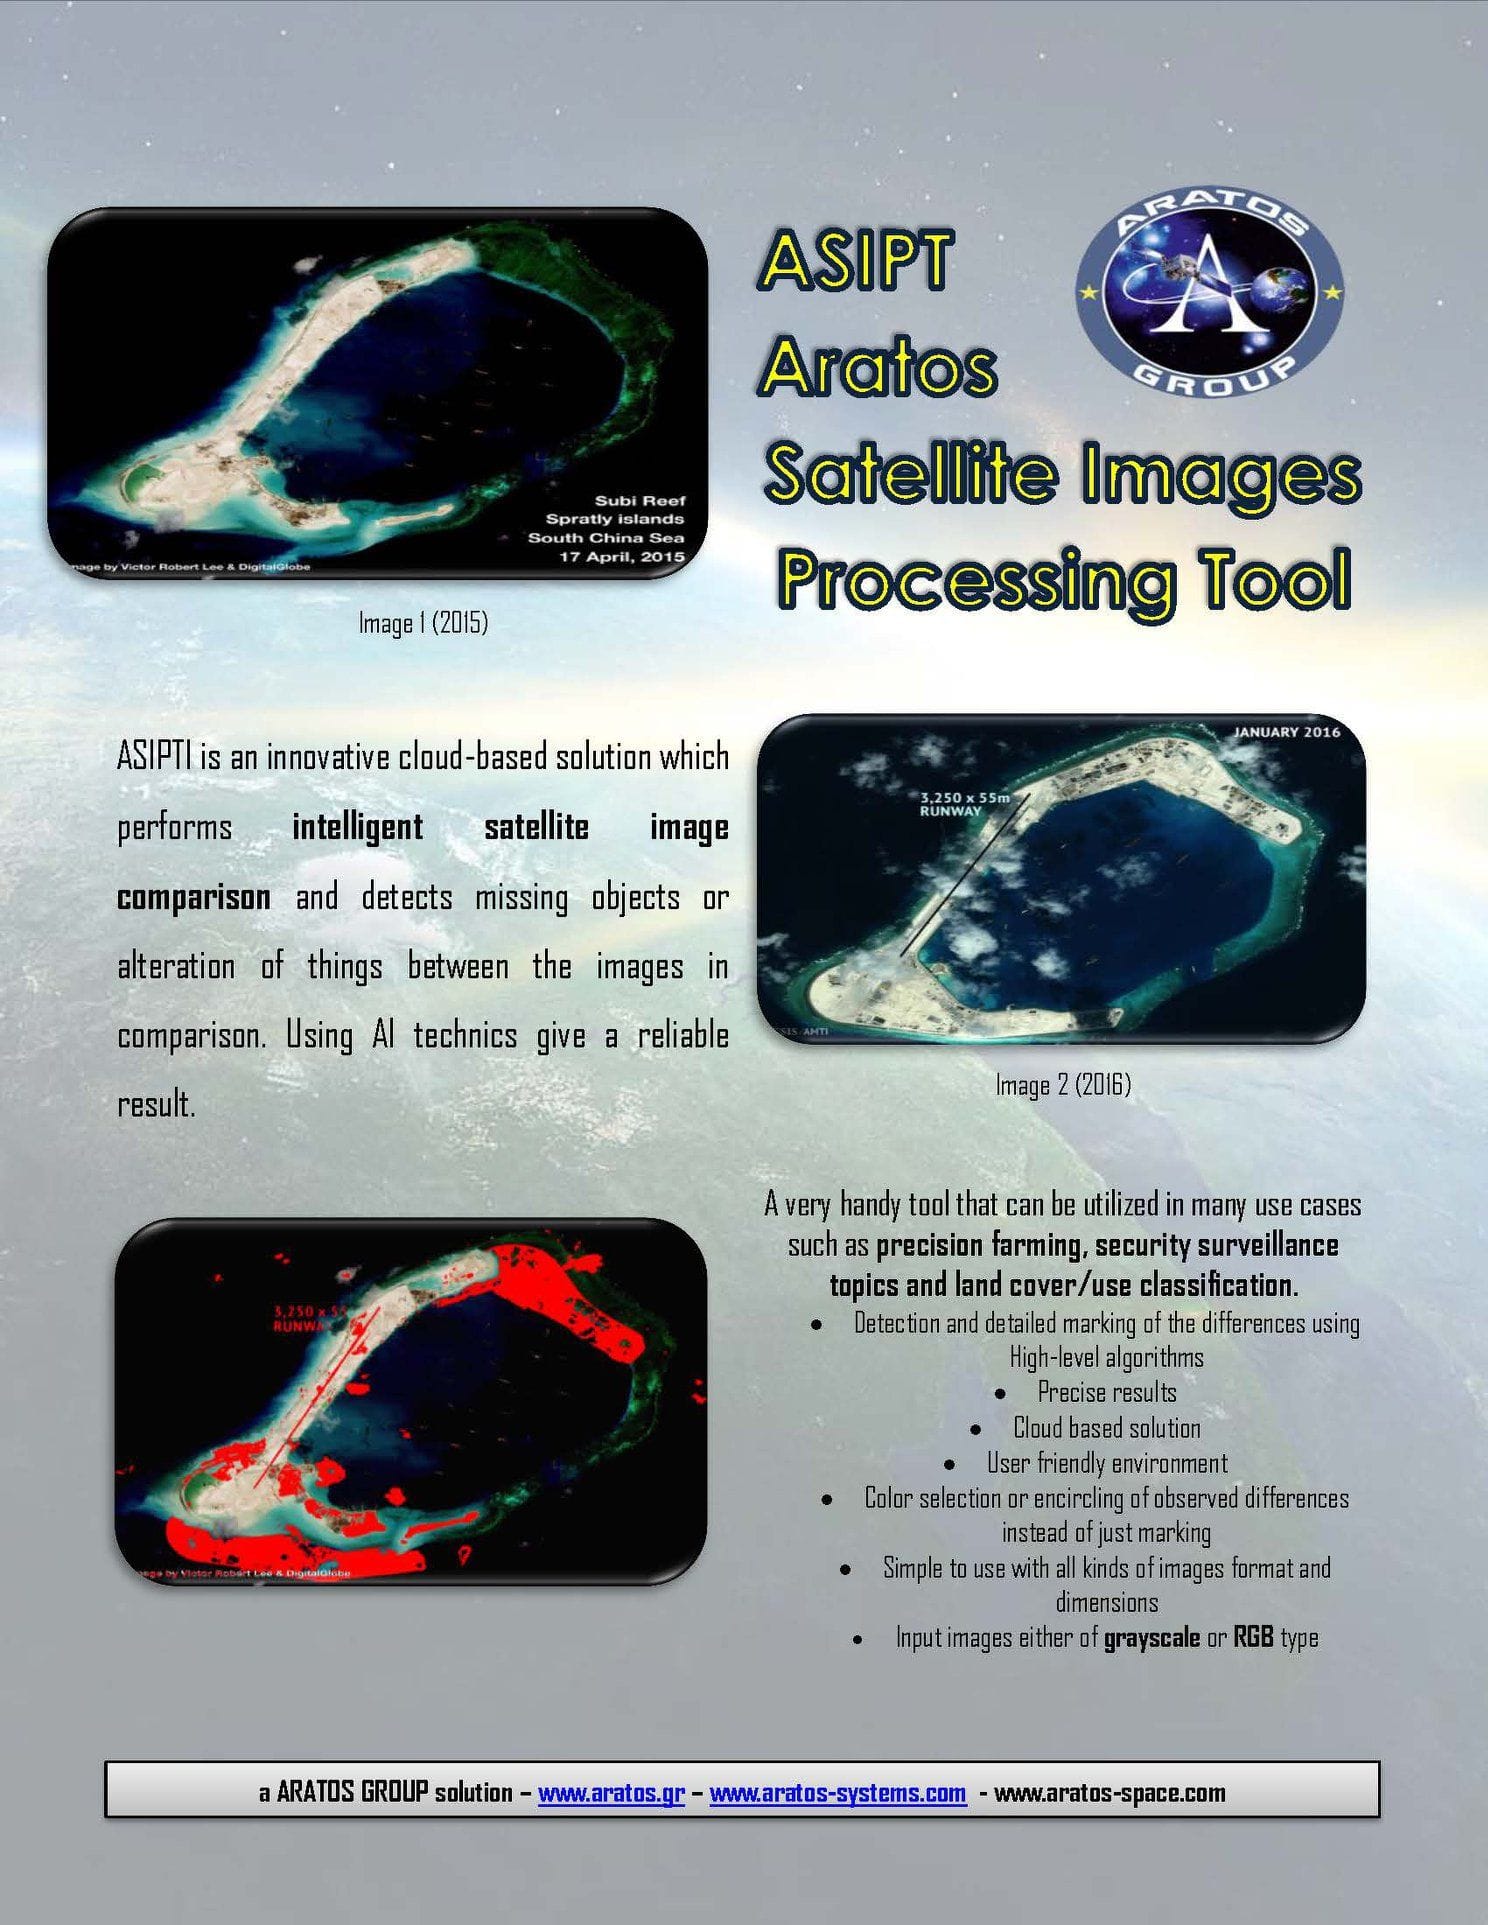 Ein Poster wirbt für die Satellitentechnologie des Unternehmens Aratos.